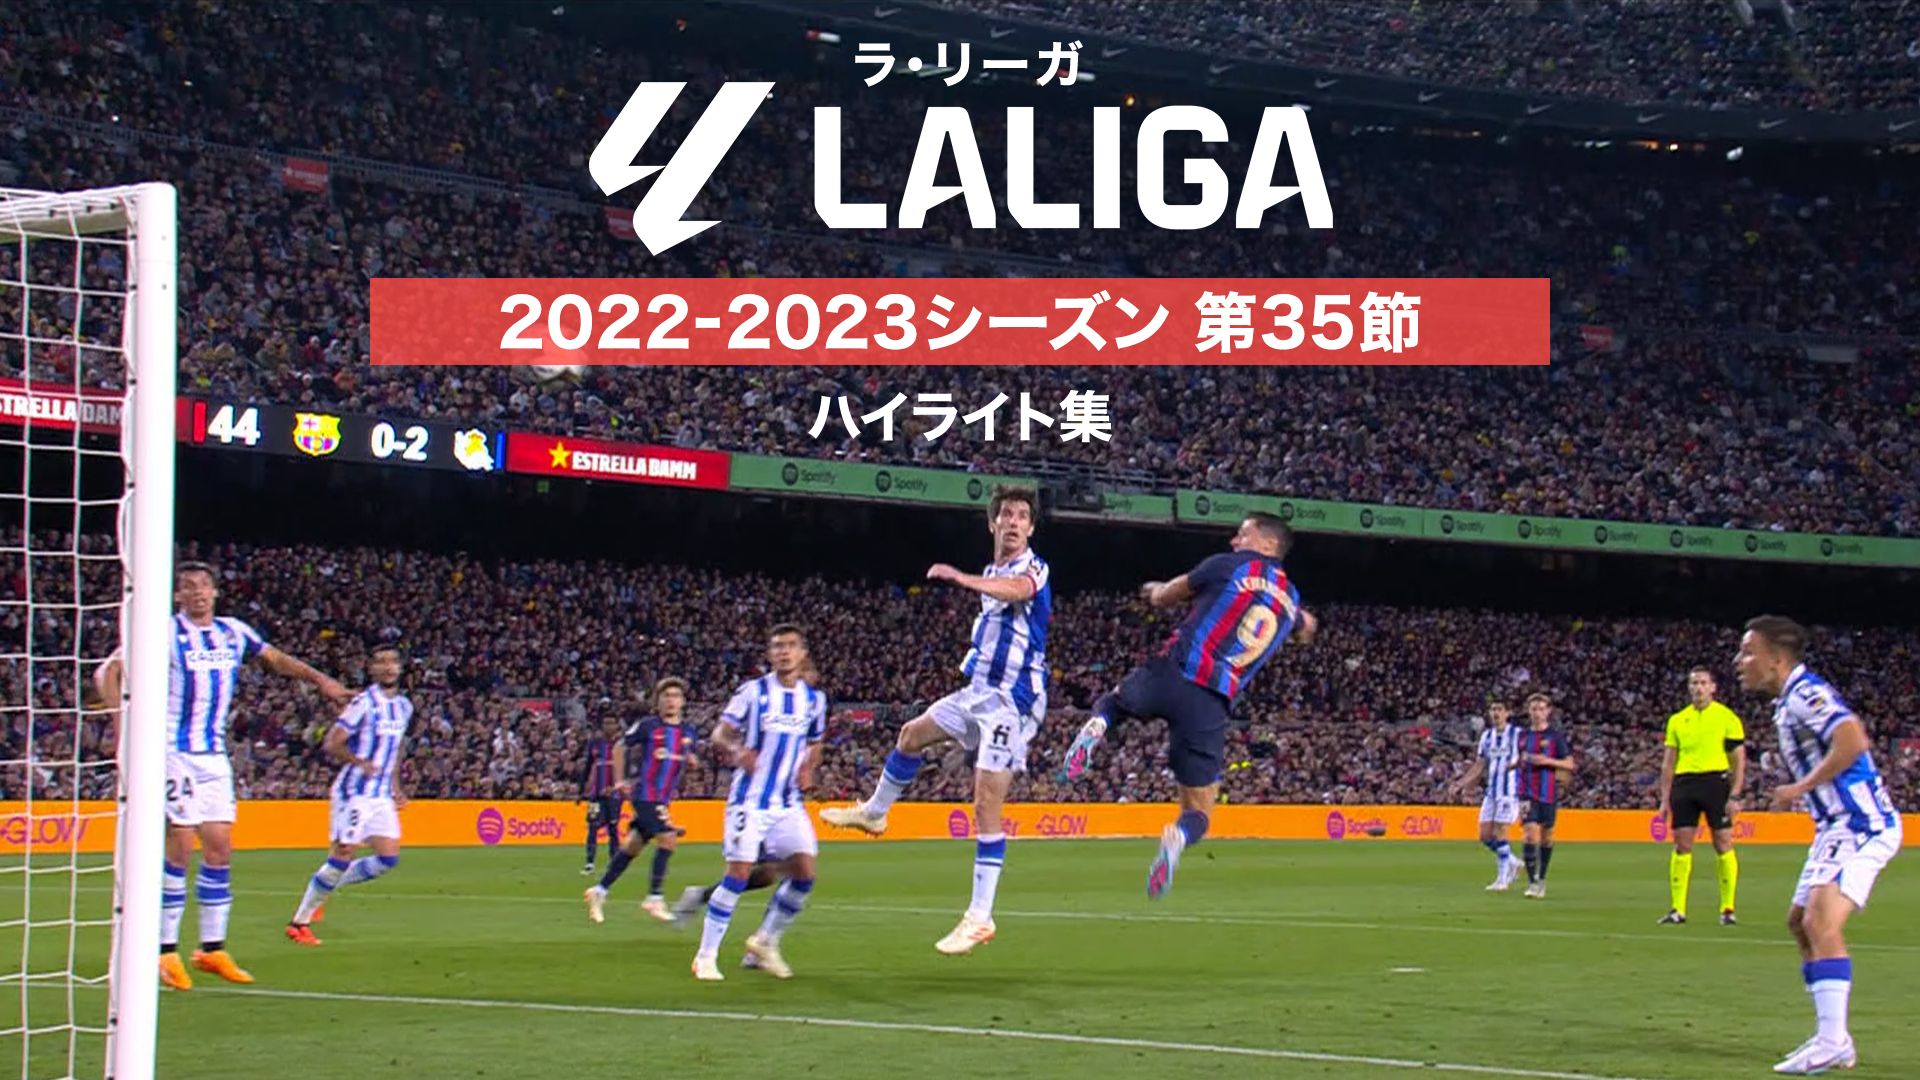 ラ・リーガ 2022-2023シーズン 第35節 ハイライト集